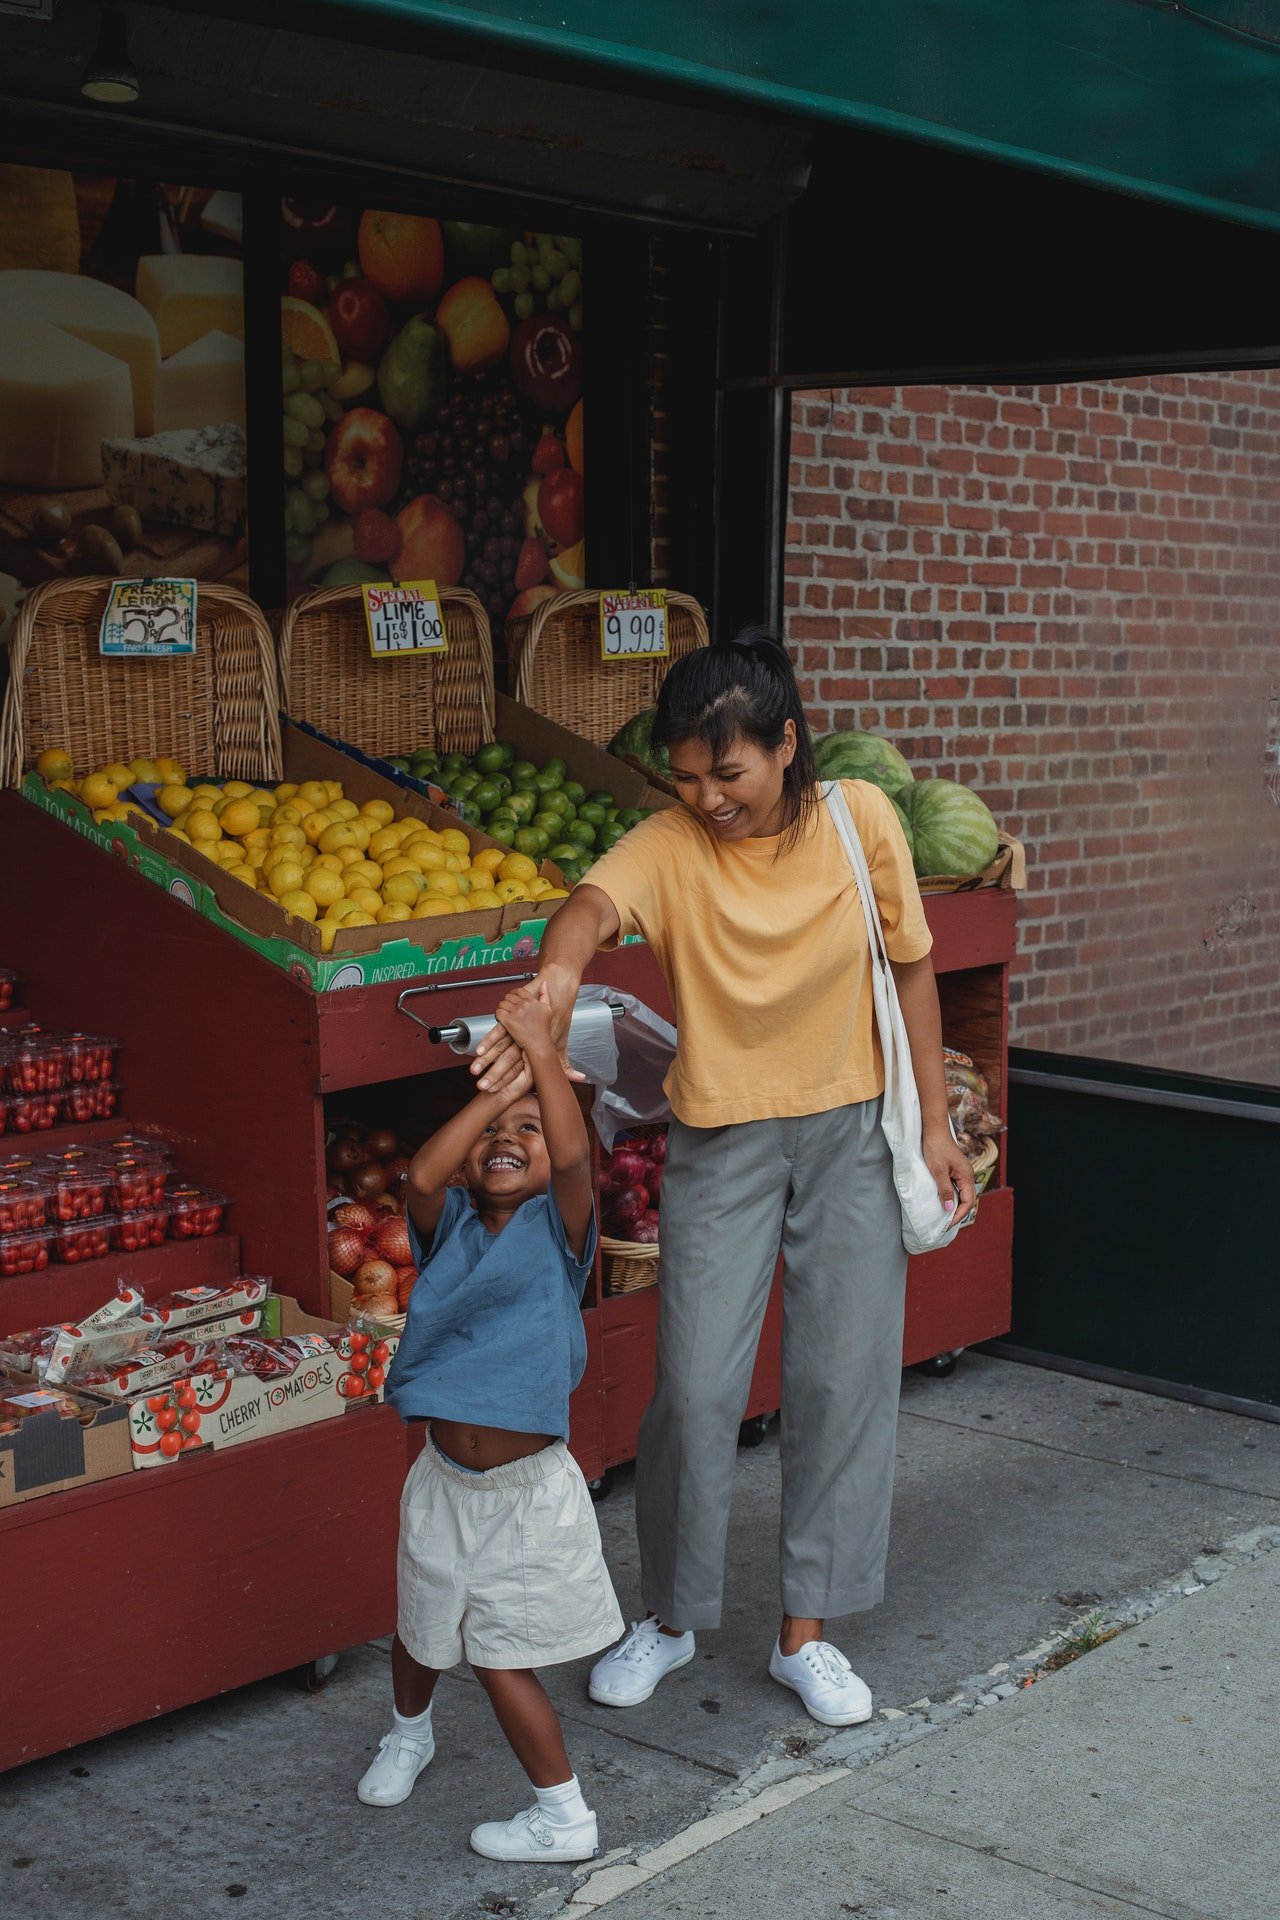 Frau und Tochter in einem Obstladen. | Quelle: Pexels